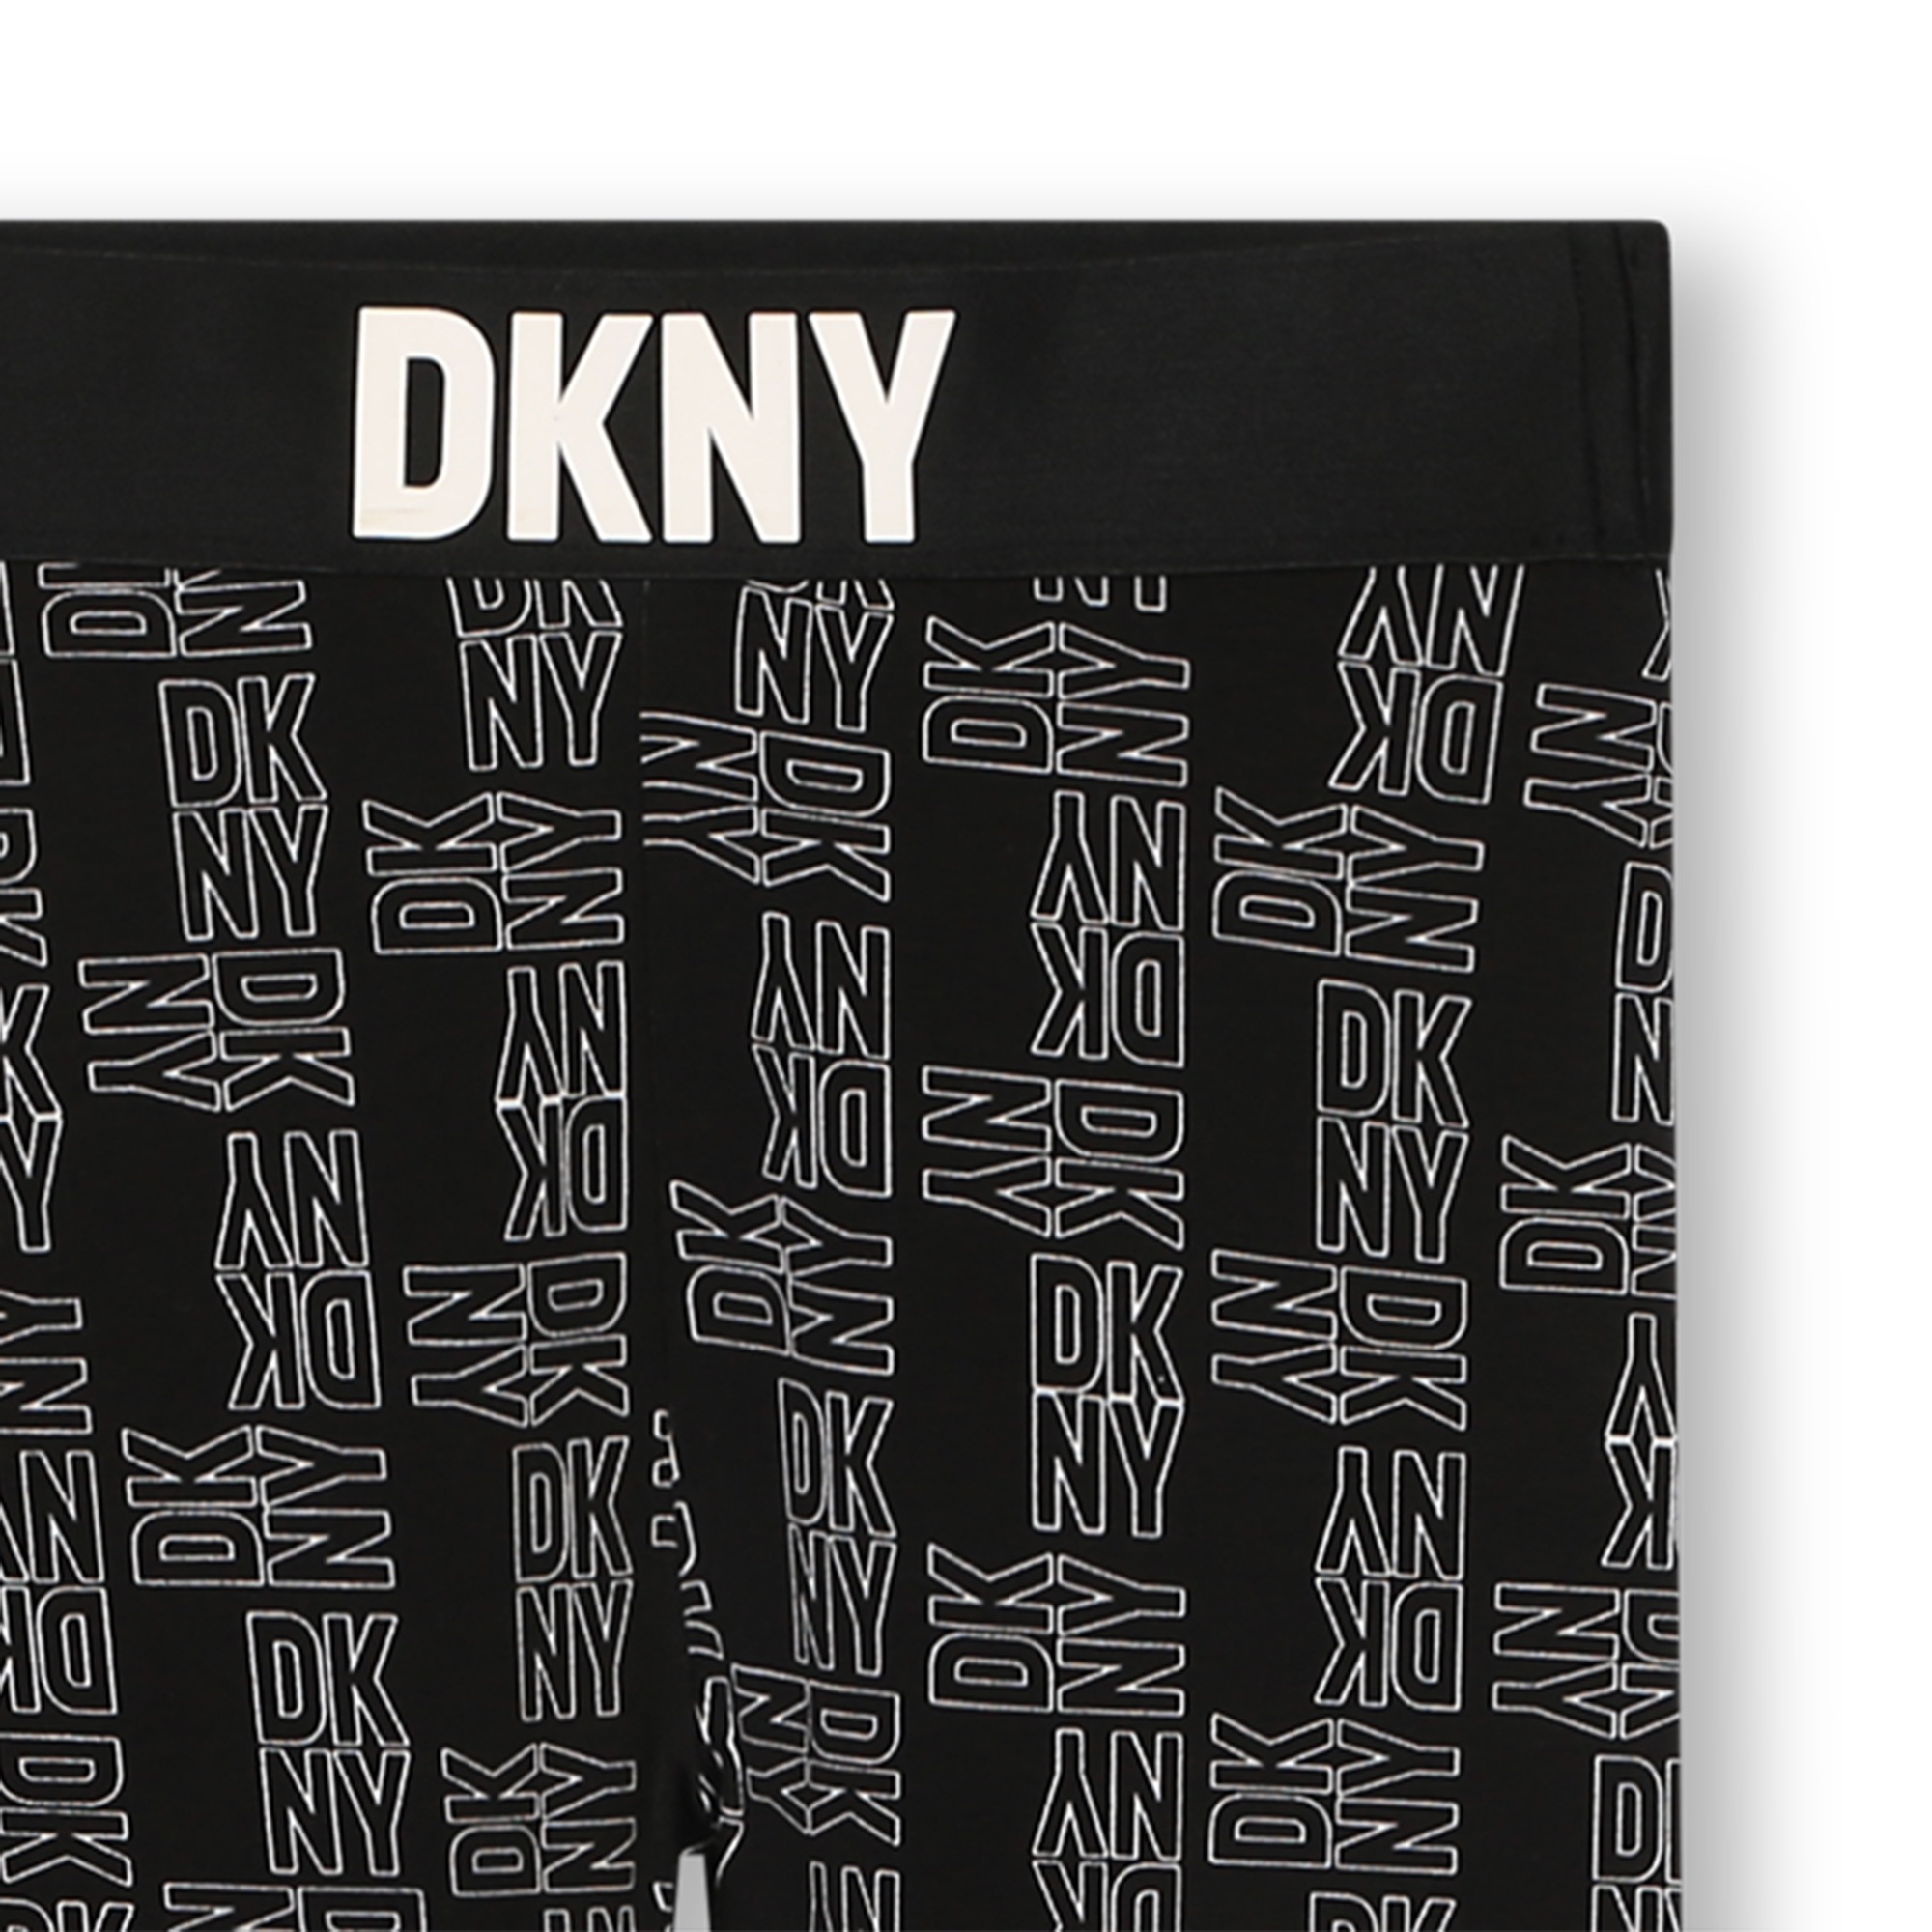 Katoenen legging met print DKNY Voor